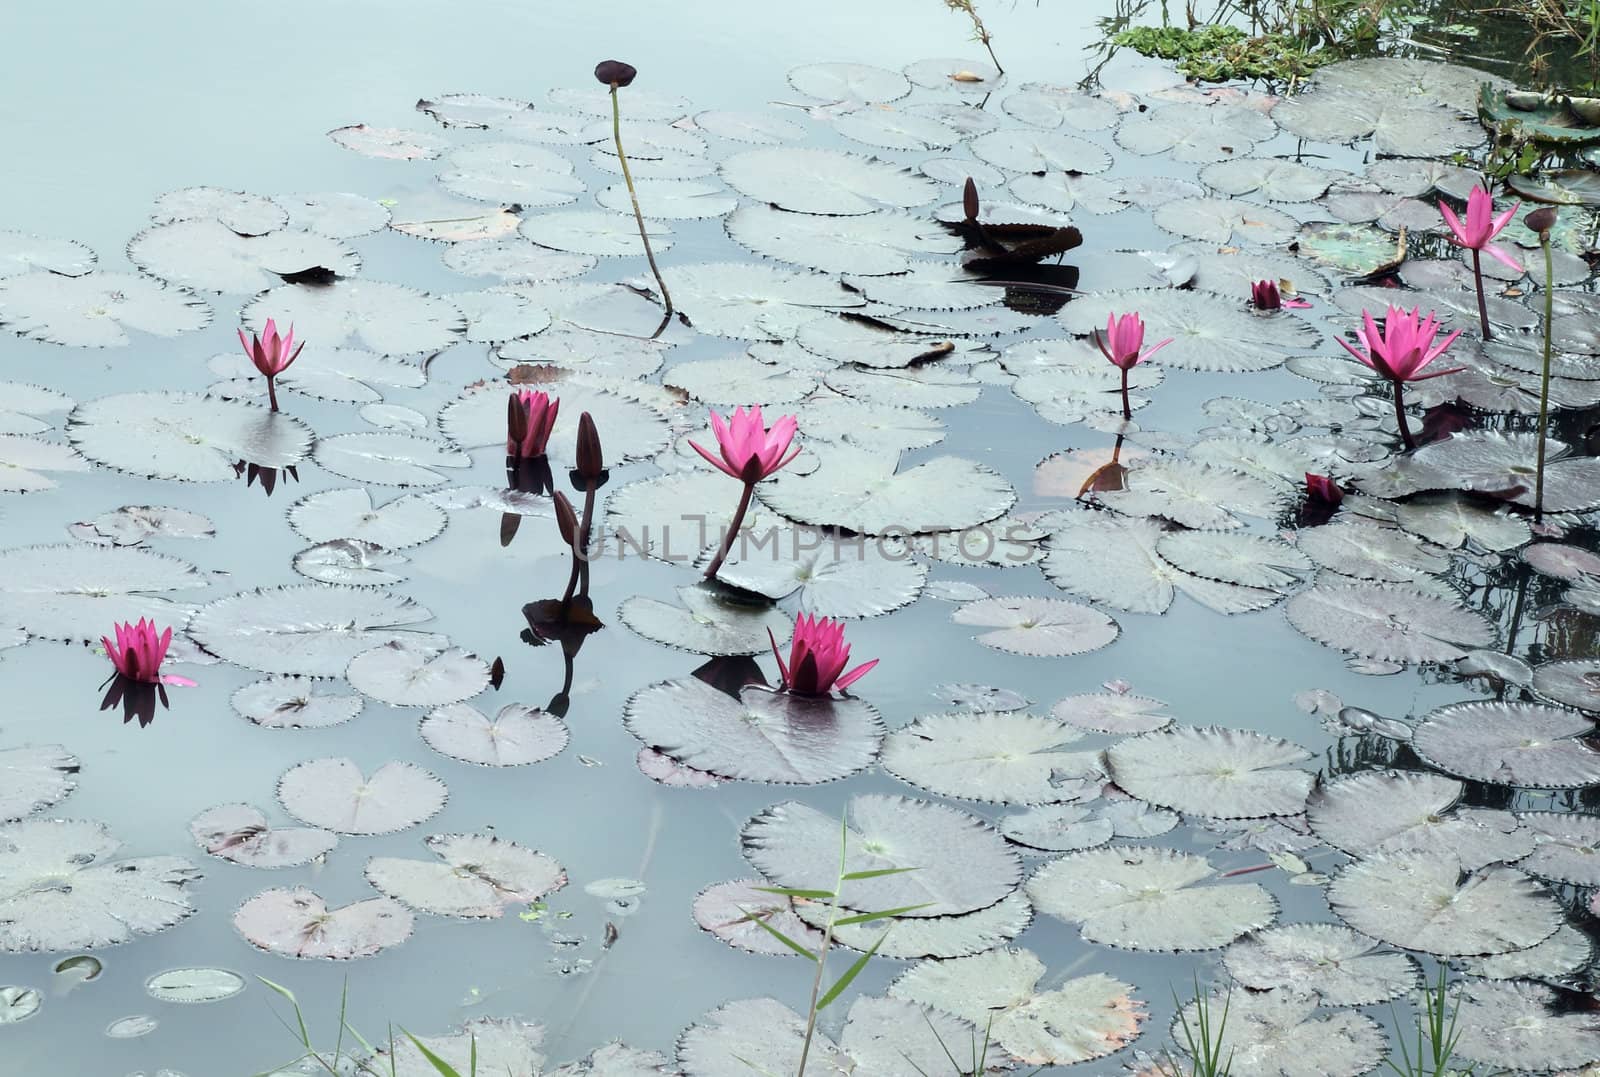 Lotus pond scenery by geargodz